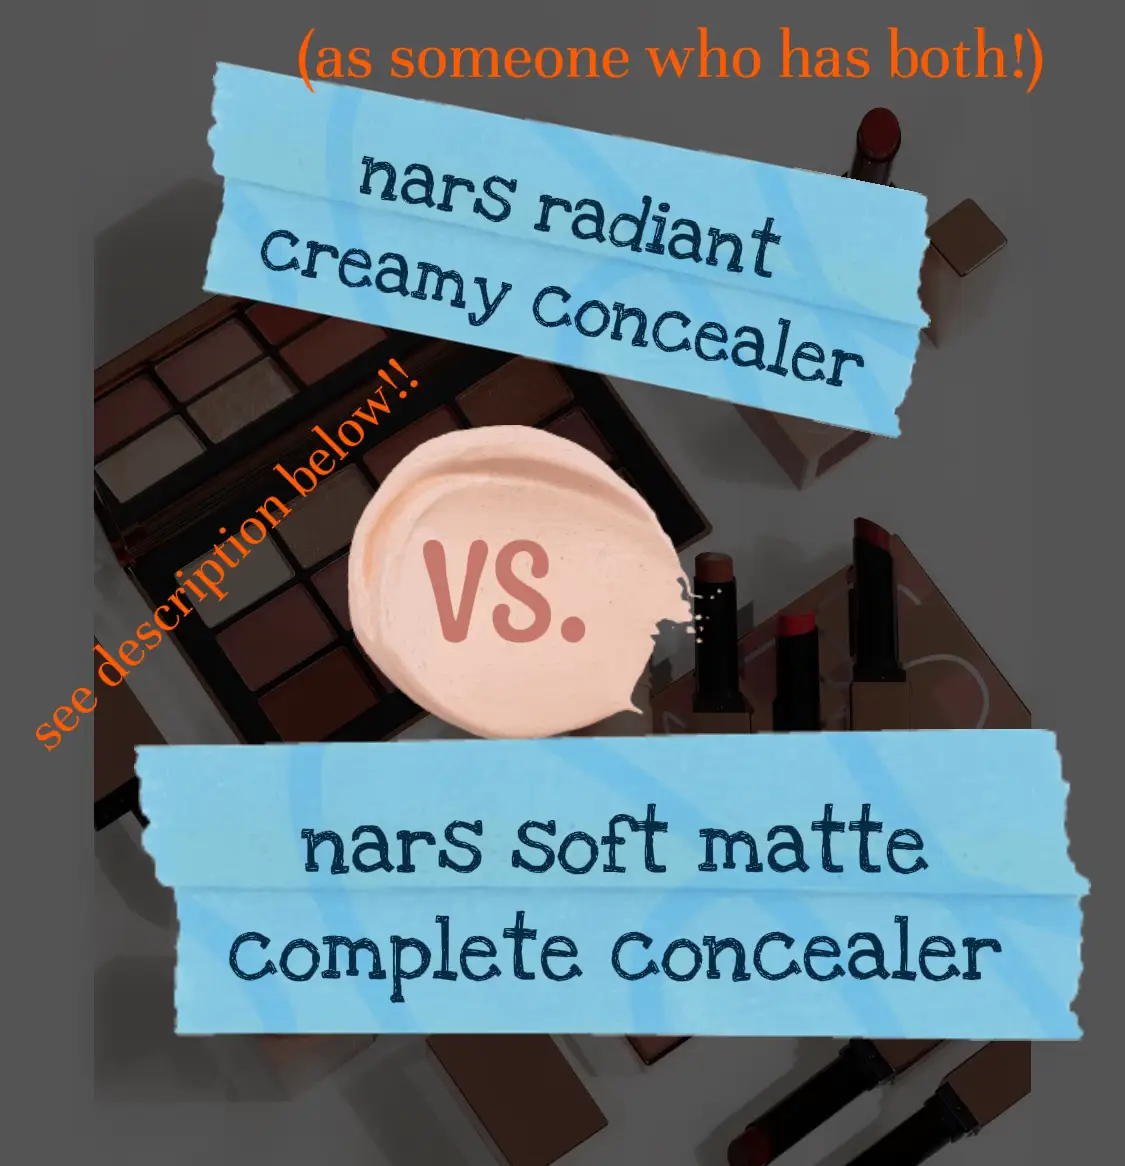 NARS Soft Matte Complete Concealer vs Radiant Creamy Concealer